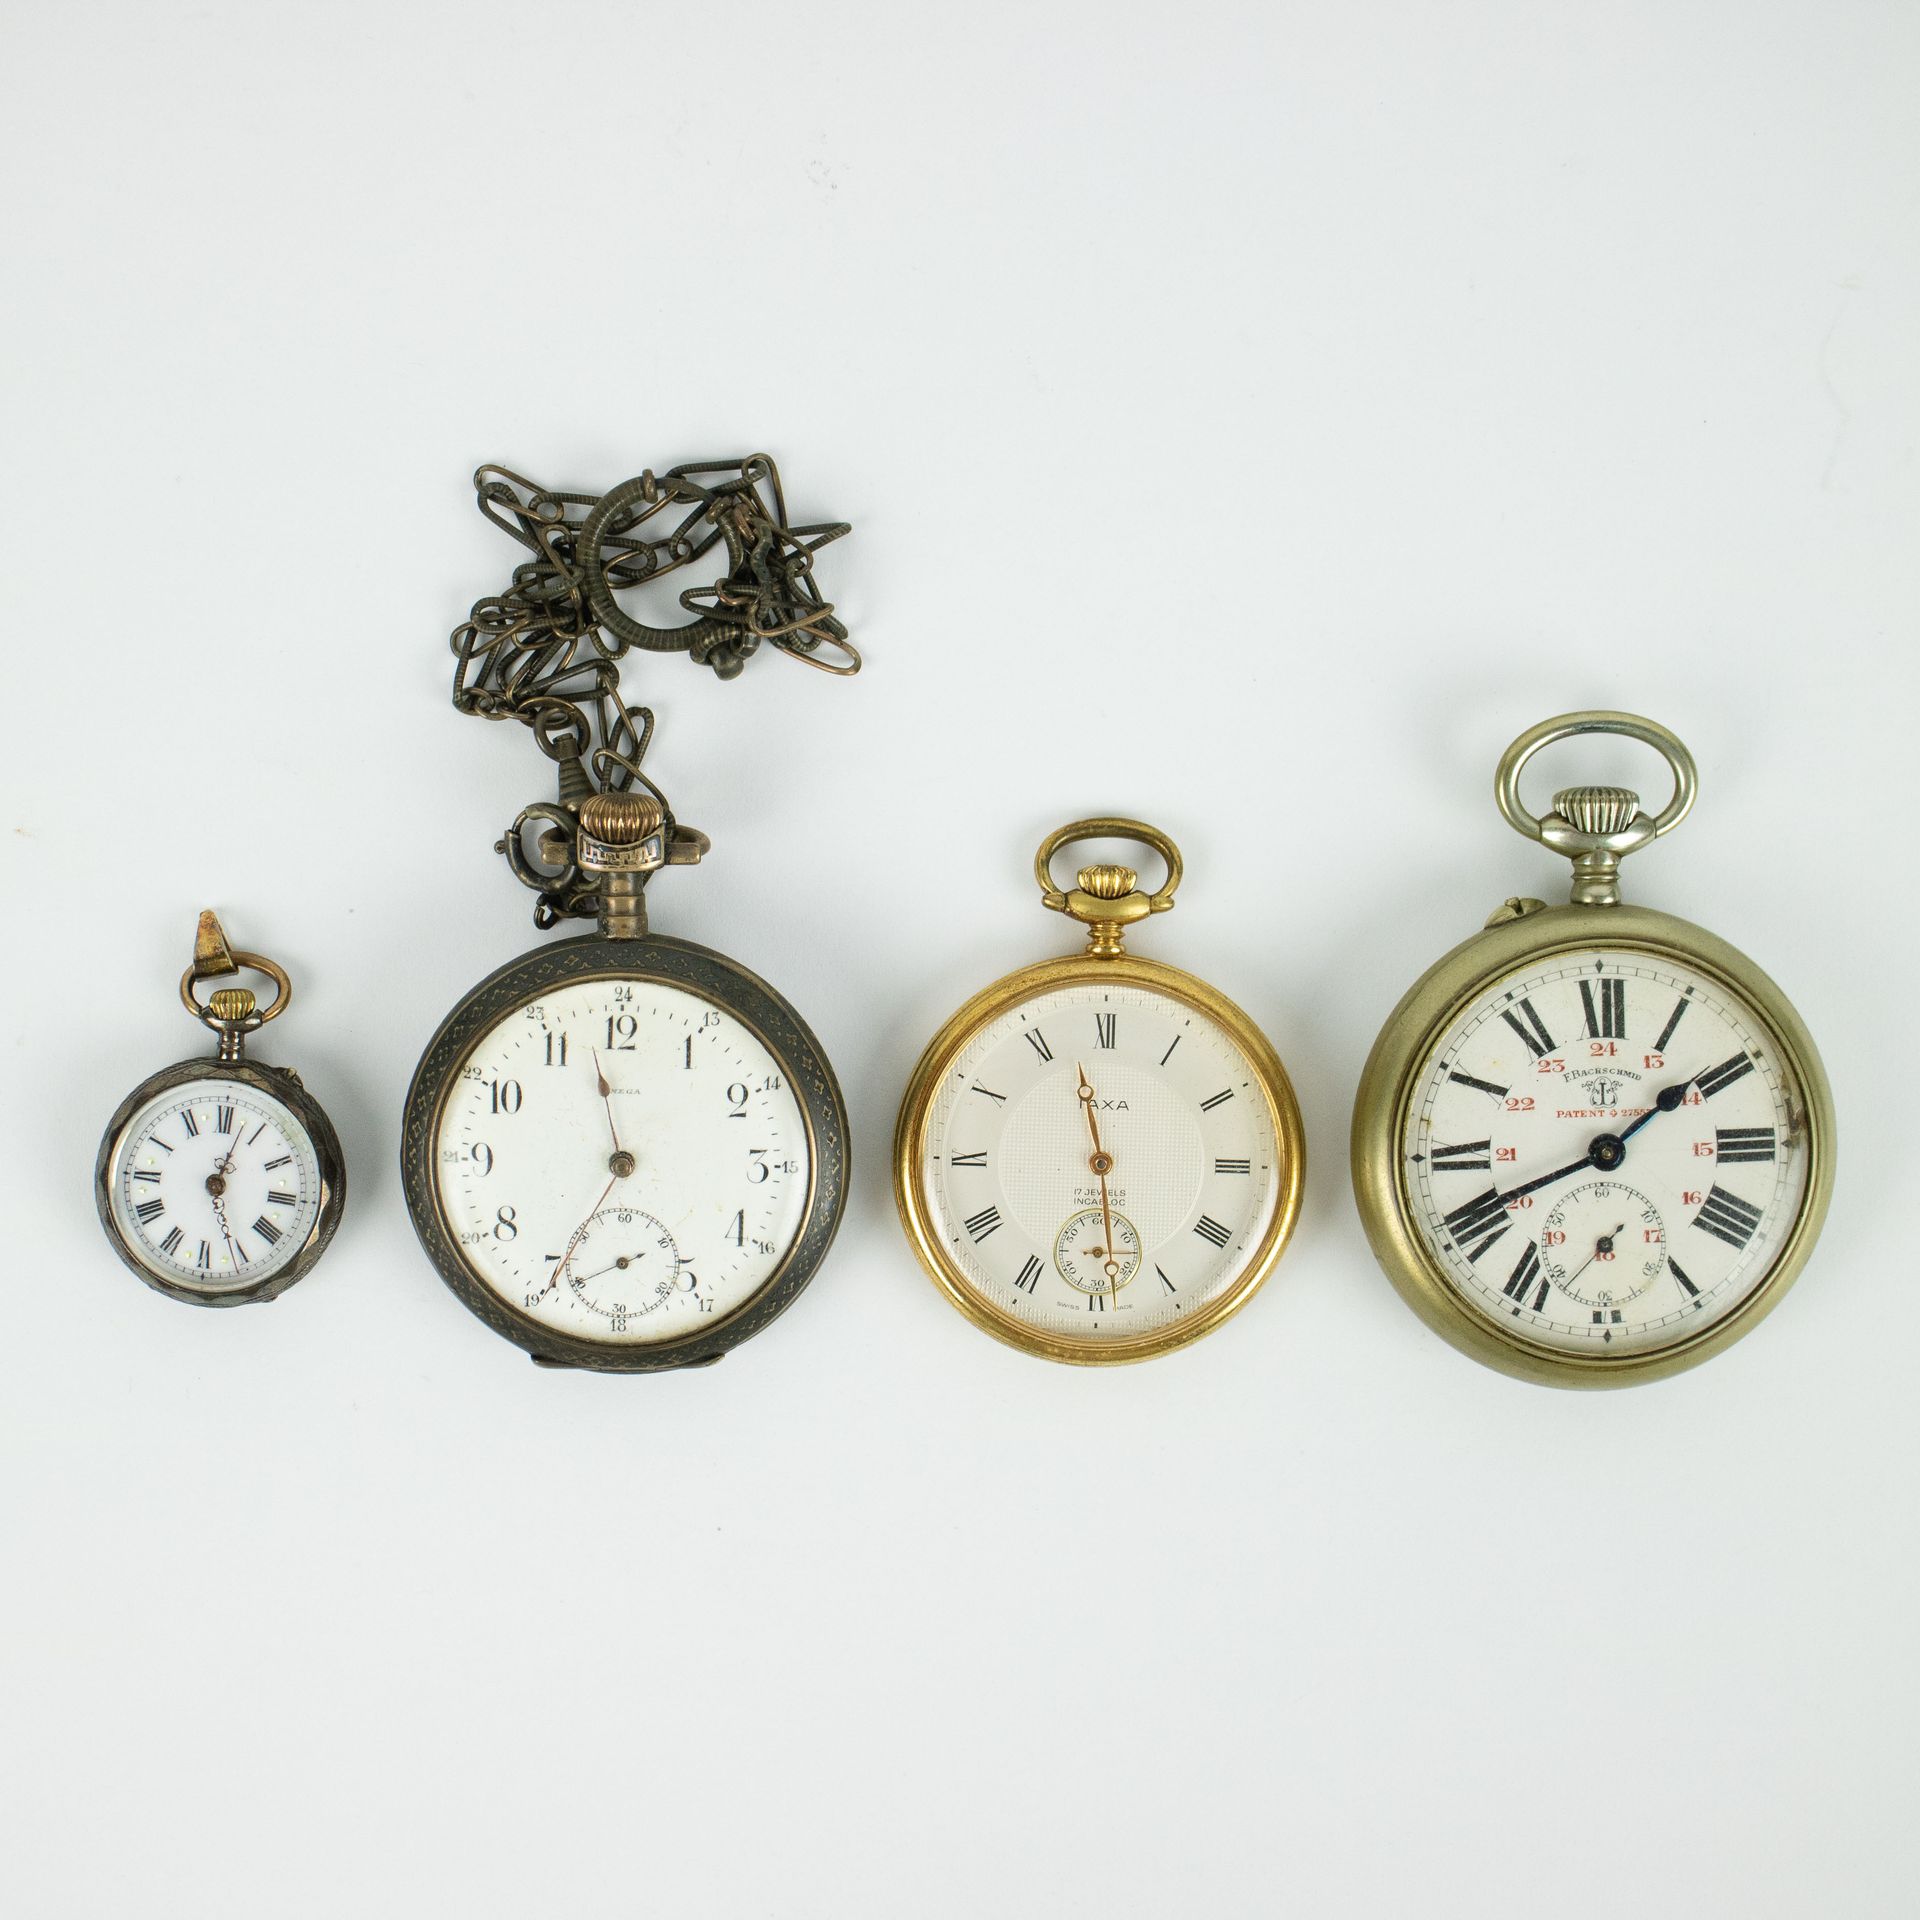 4 pocket watches A.O. A F. BACHSCHMID - Reloj de bolsillo - 1900, IAXA - Reloj d&hellip;